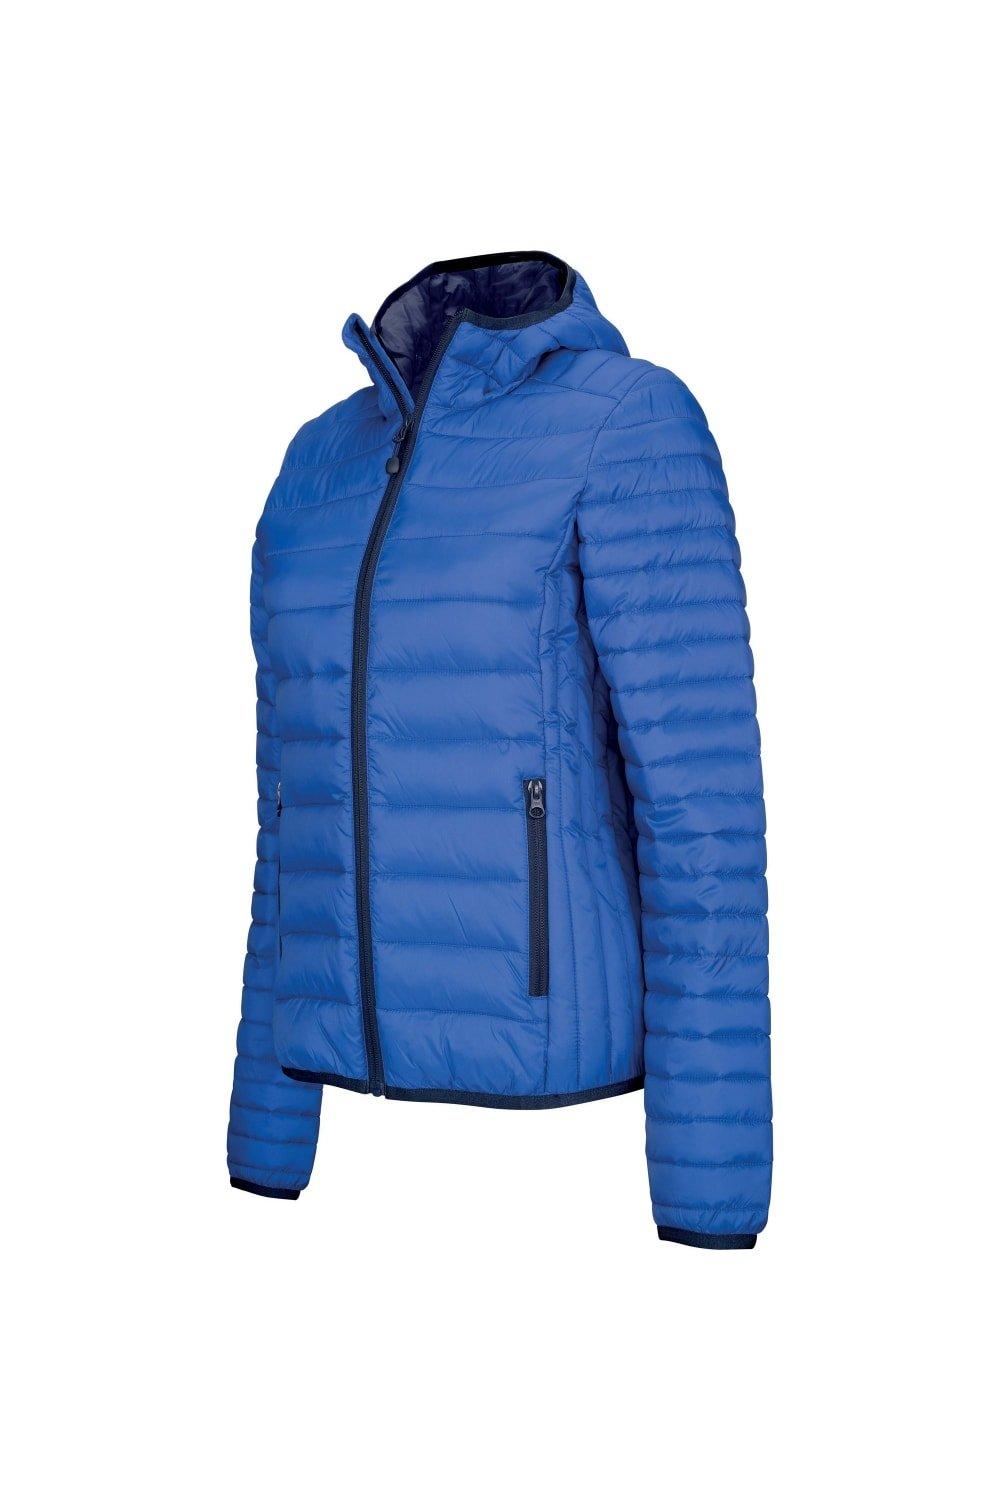 Легкая стеганая куртка с капюшоном Kariban, синий куртка стеганая легкая с капюшоном и цветочным принтом 6 лет 114 см синий